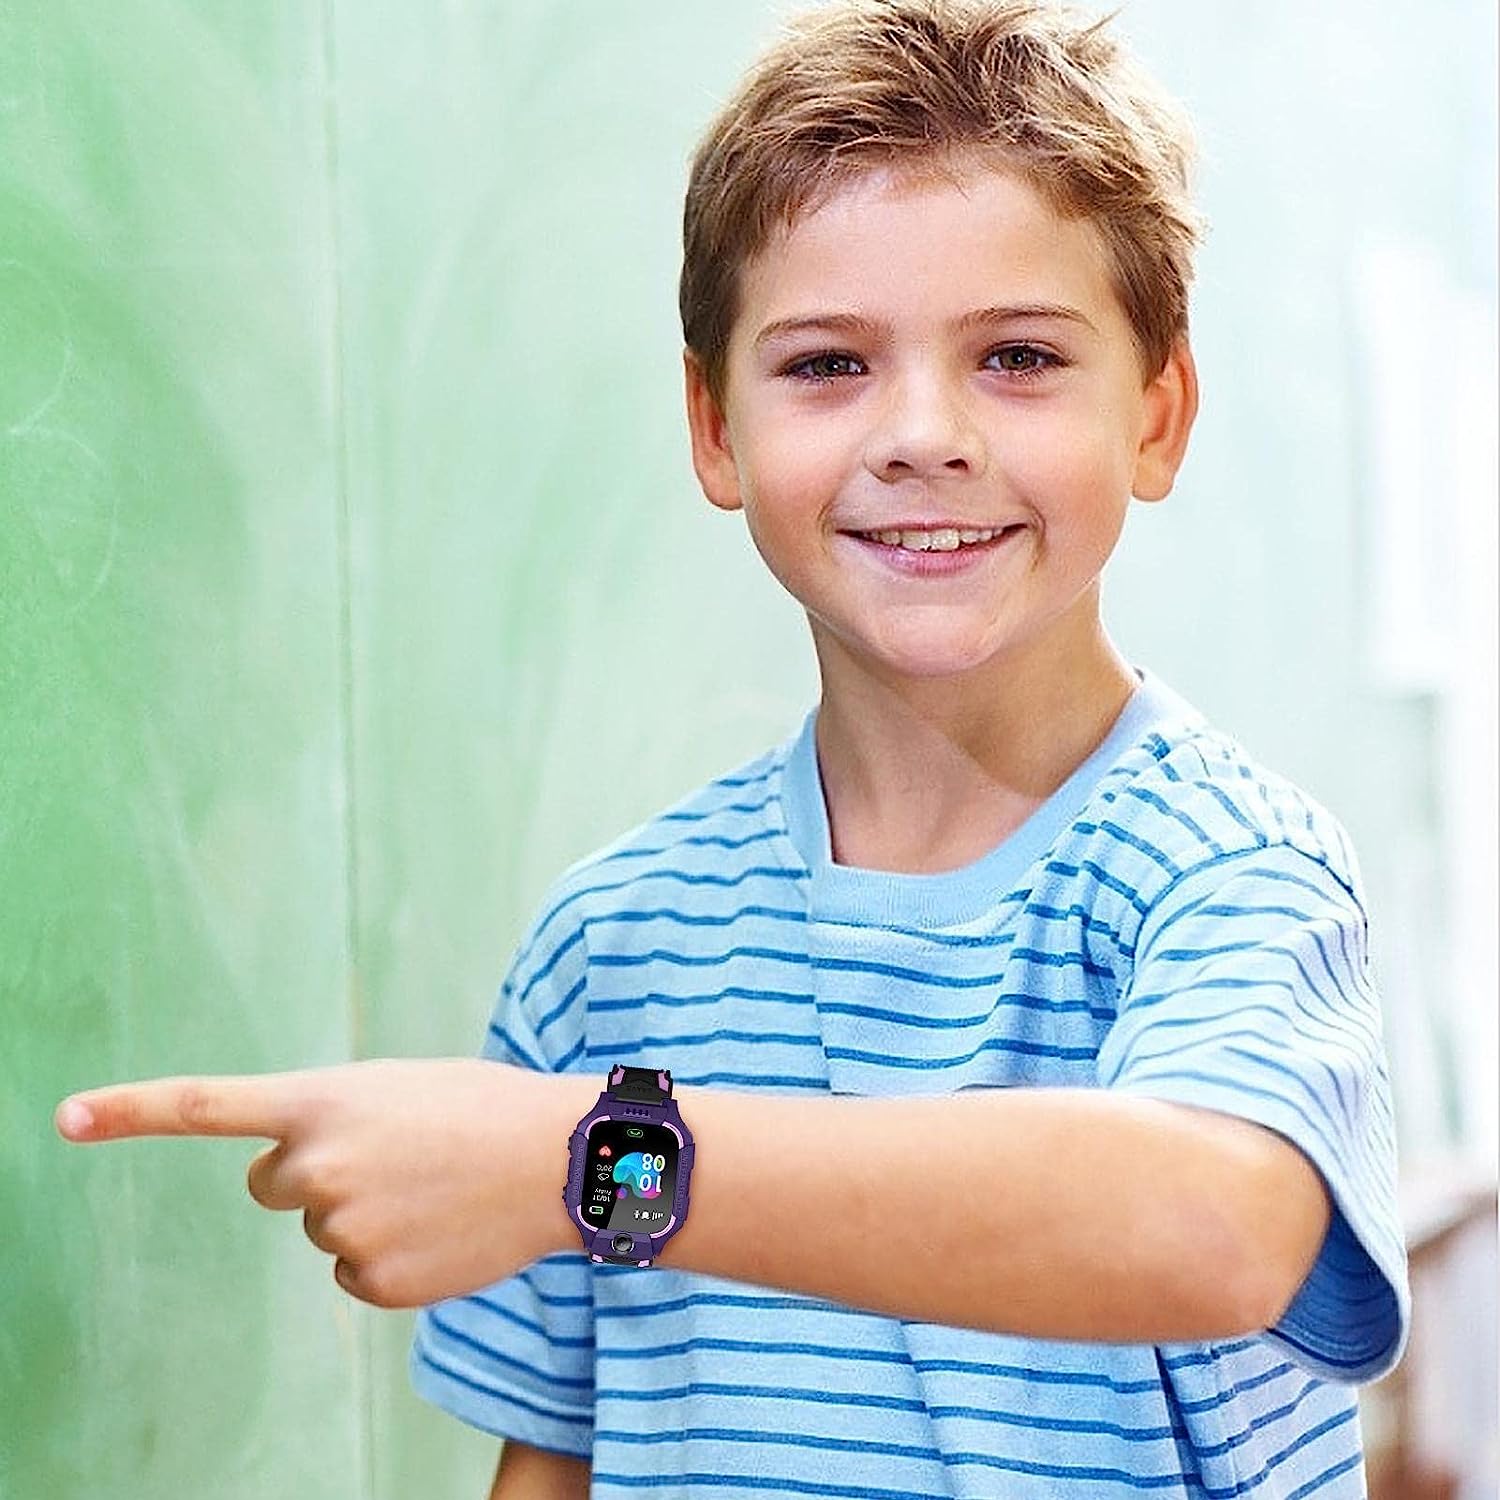 ساعة يد ذكية للاطفال من ، ساعة معصم تعمل باللمس، اتصال واجراء مكالمات هاتفية ورسائل نصية متتبع المواقع ال بي اس للاولاد والفتيات مقاومة للماء ، بديل الجوال للاطفال - احمر